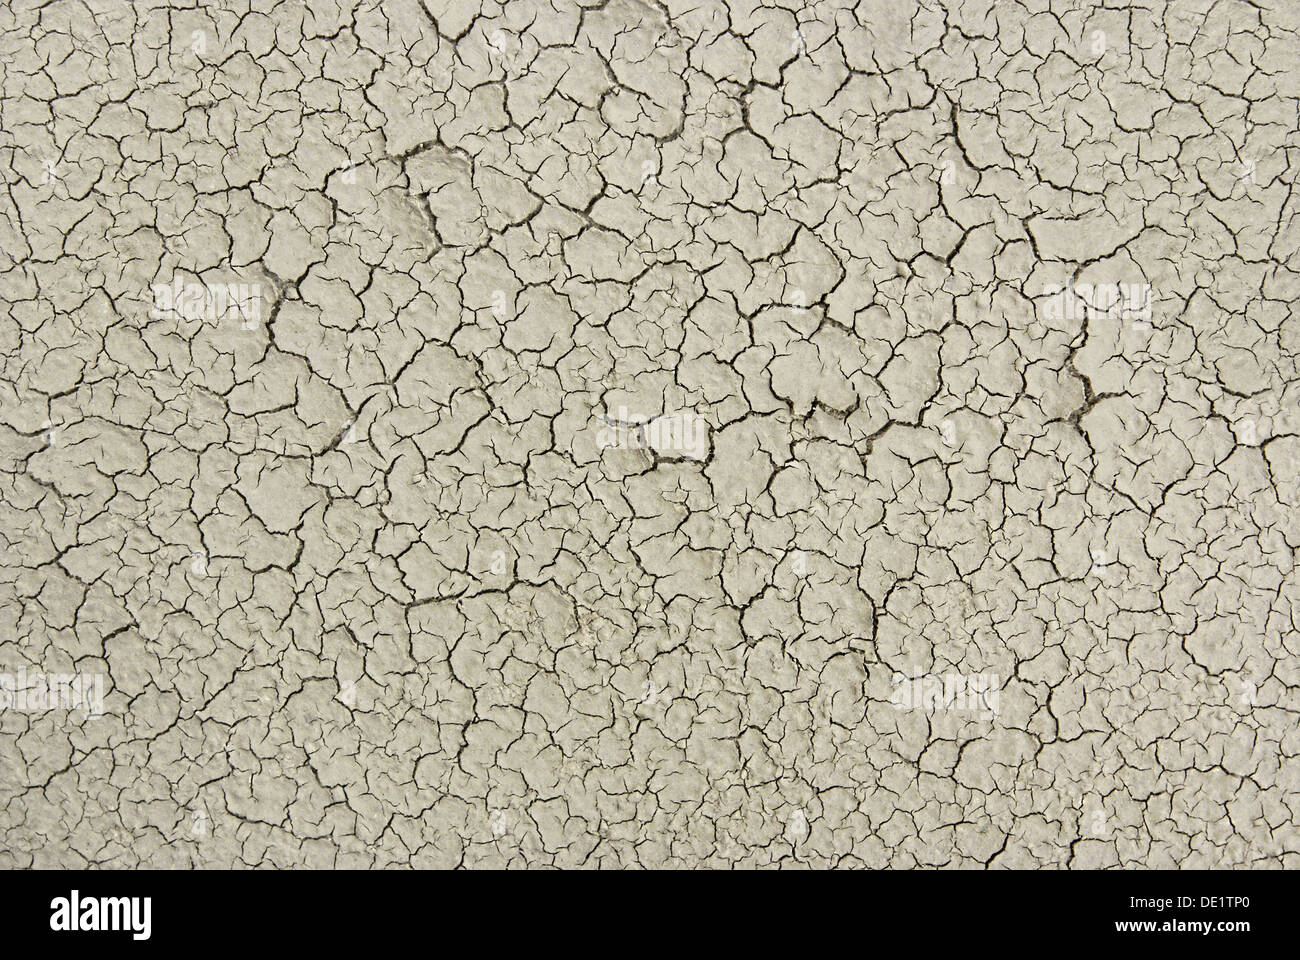 Dettaglio di incrinate aridità del suolo texture di massa Foto Stock